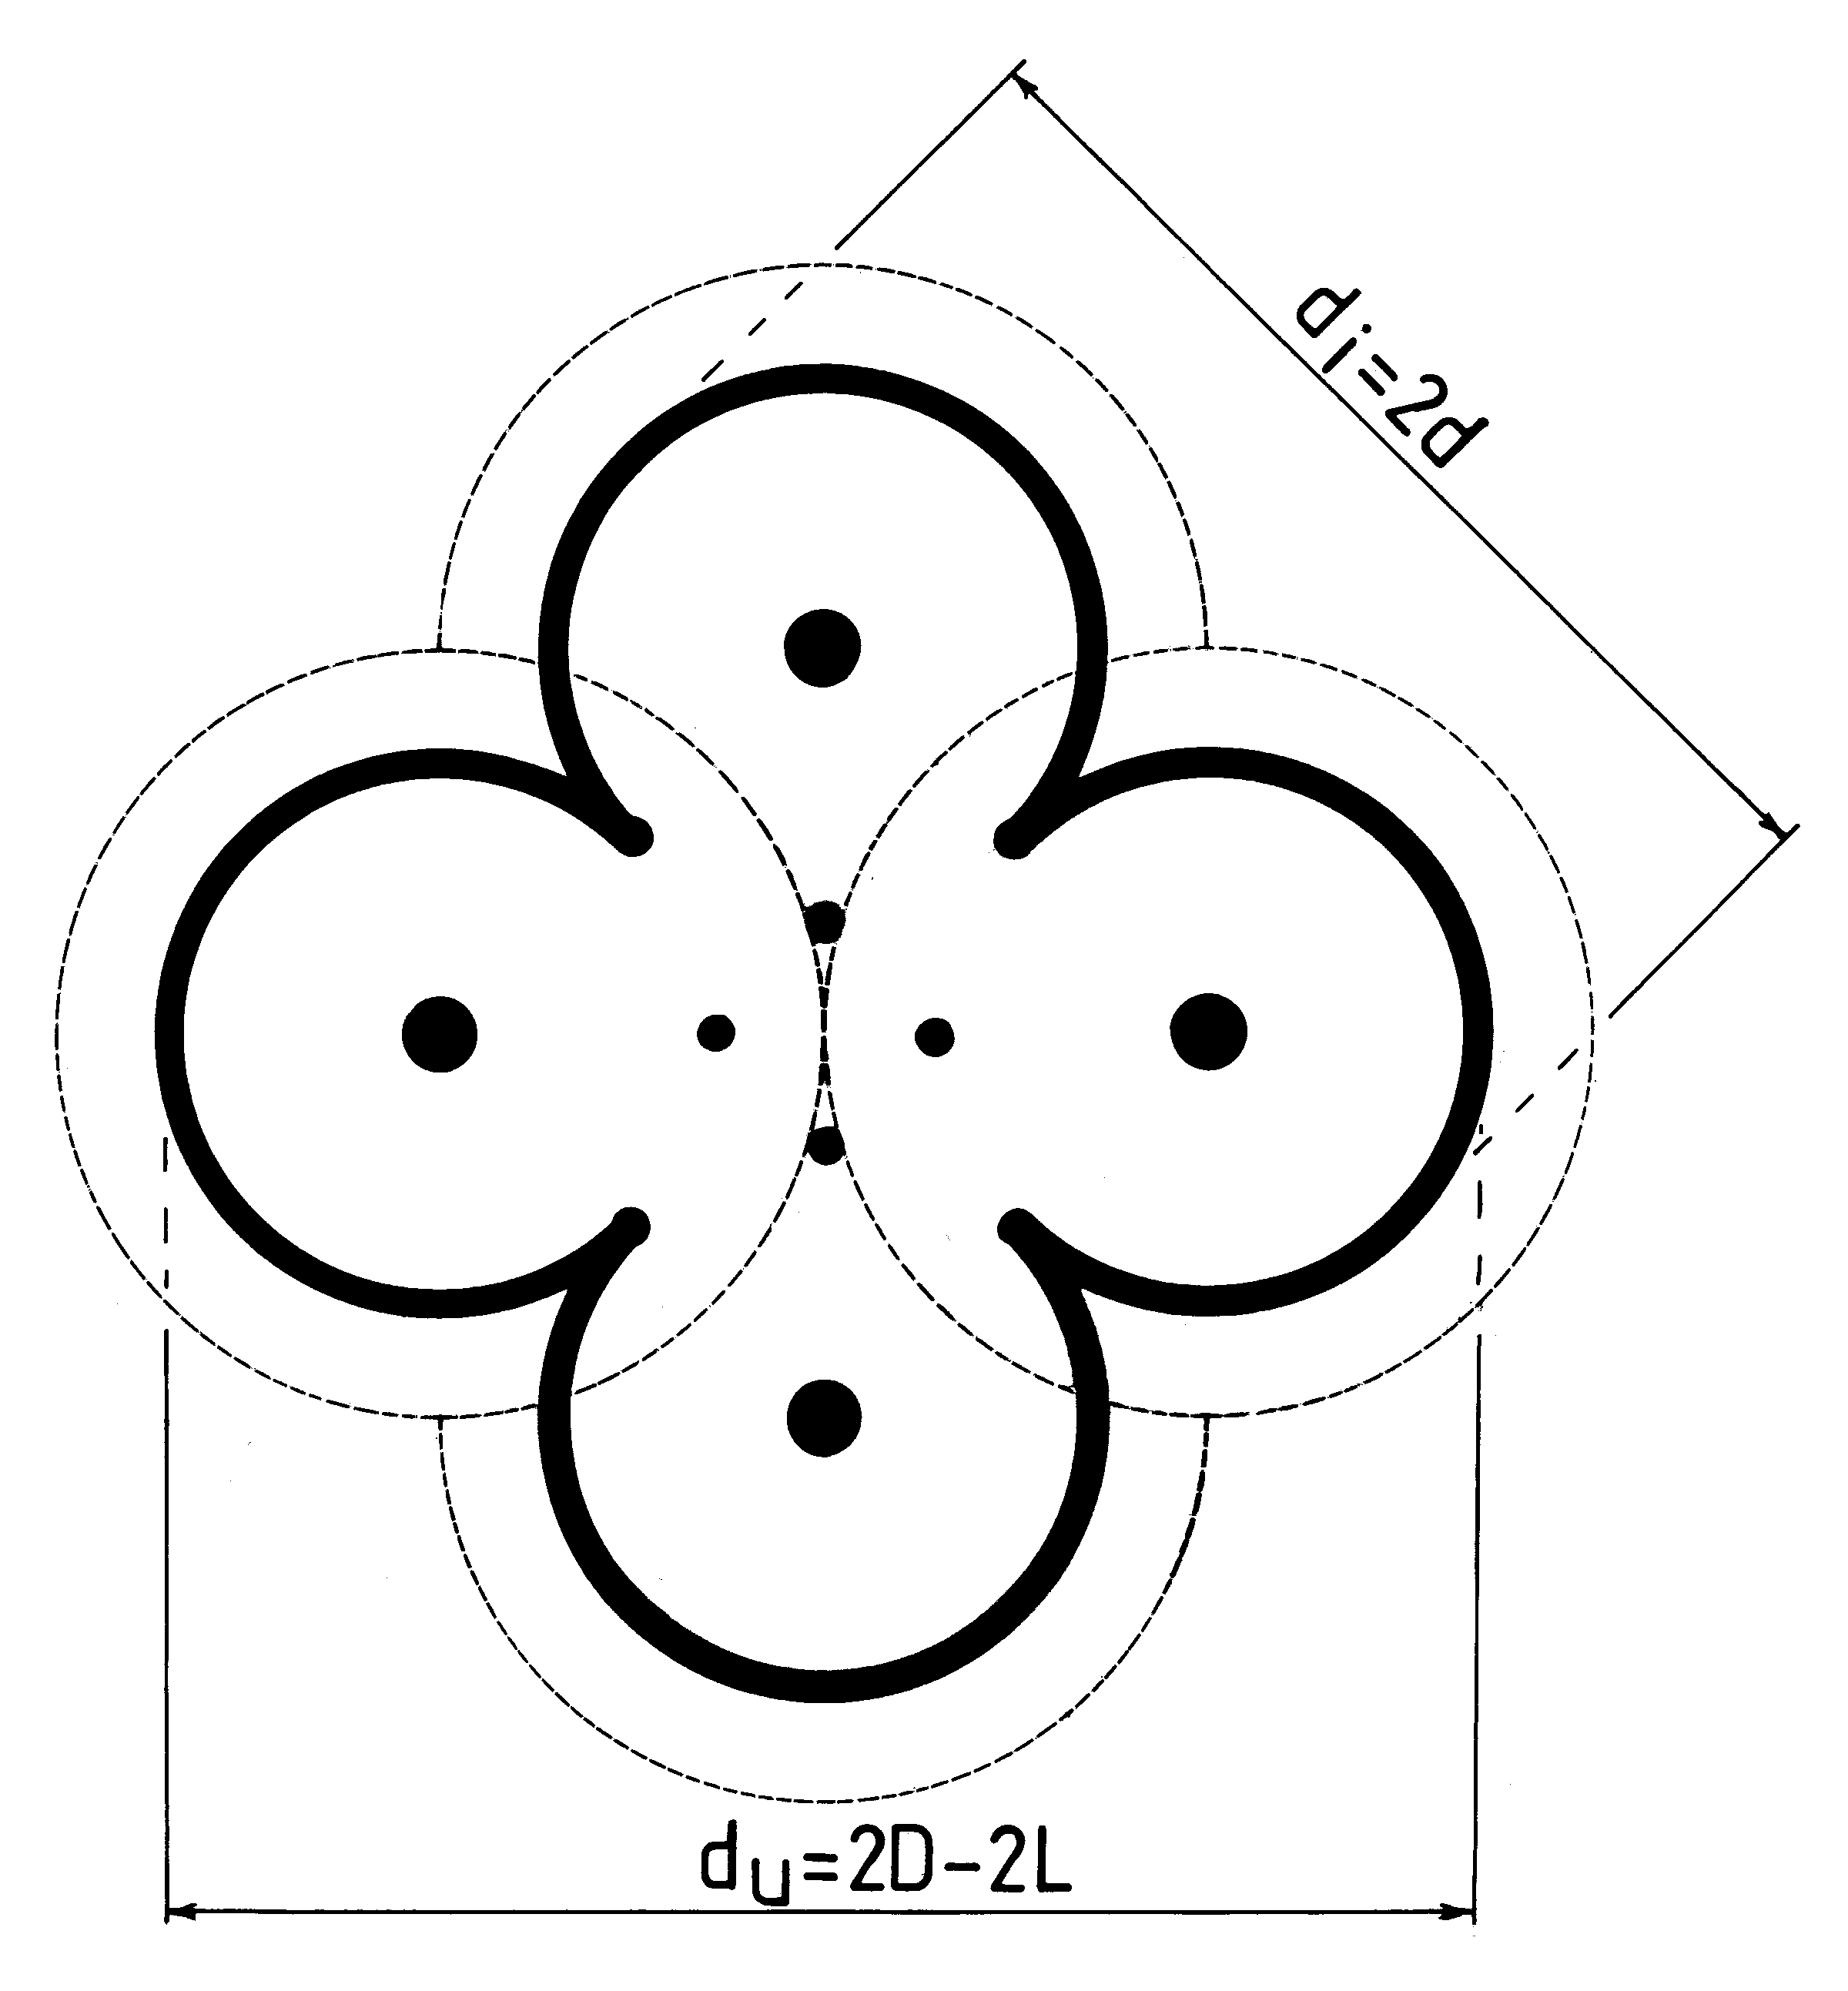 Fig. M12(b)